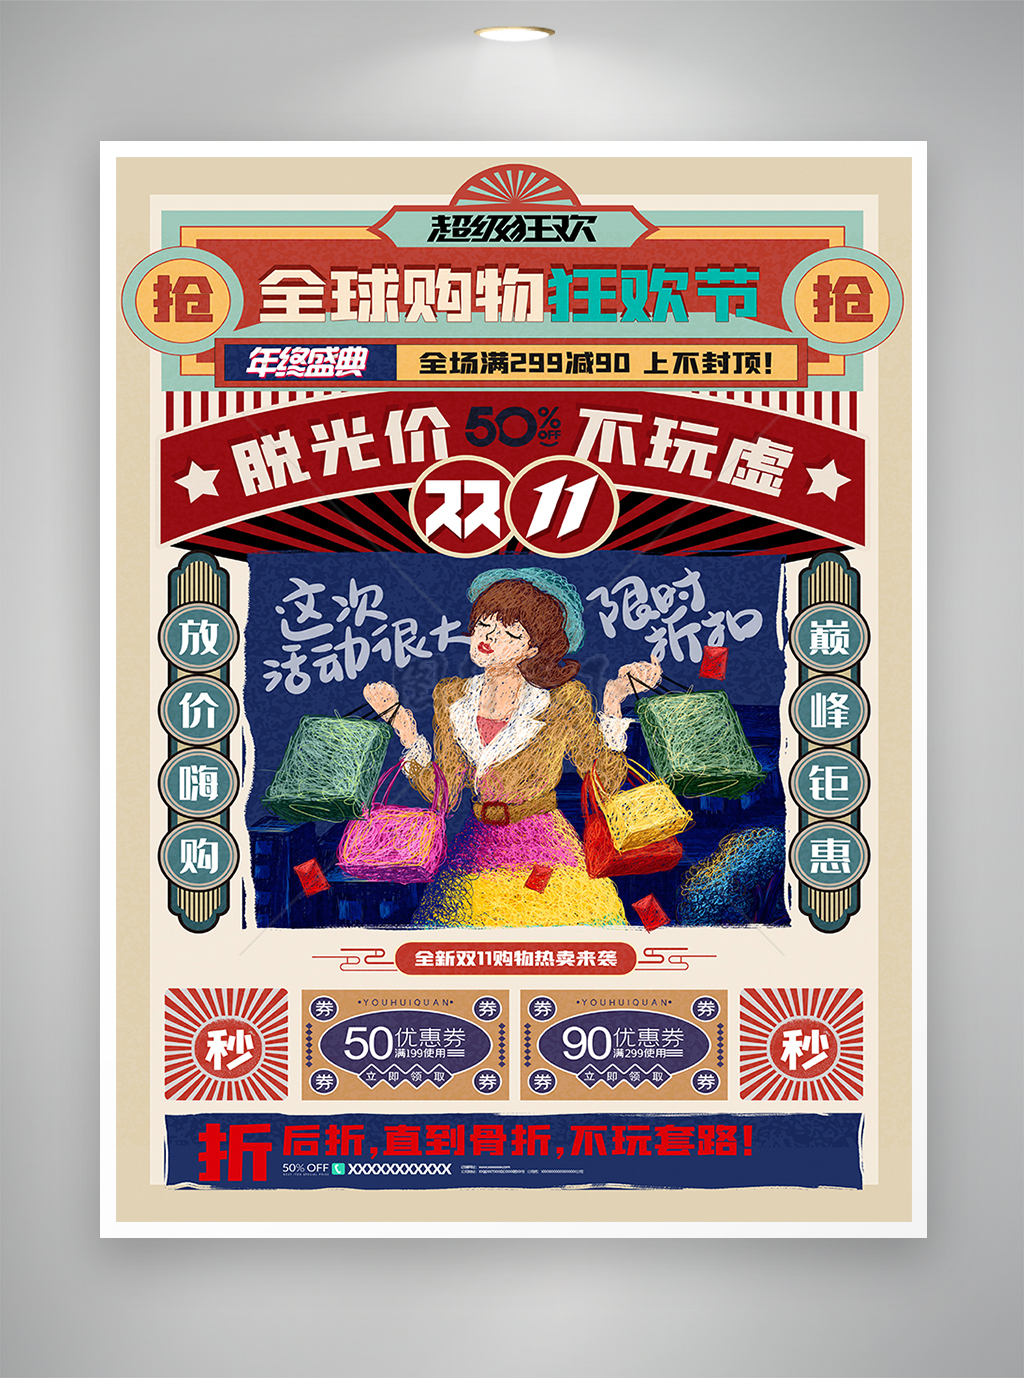 复古风全球购物狂欢节双十一促销海报